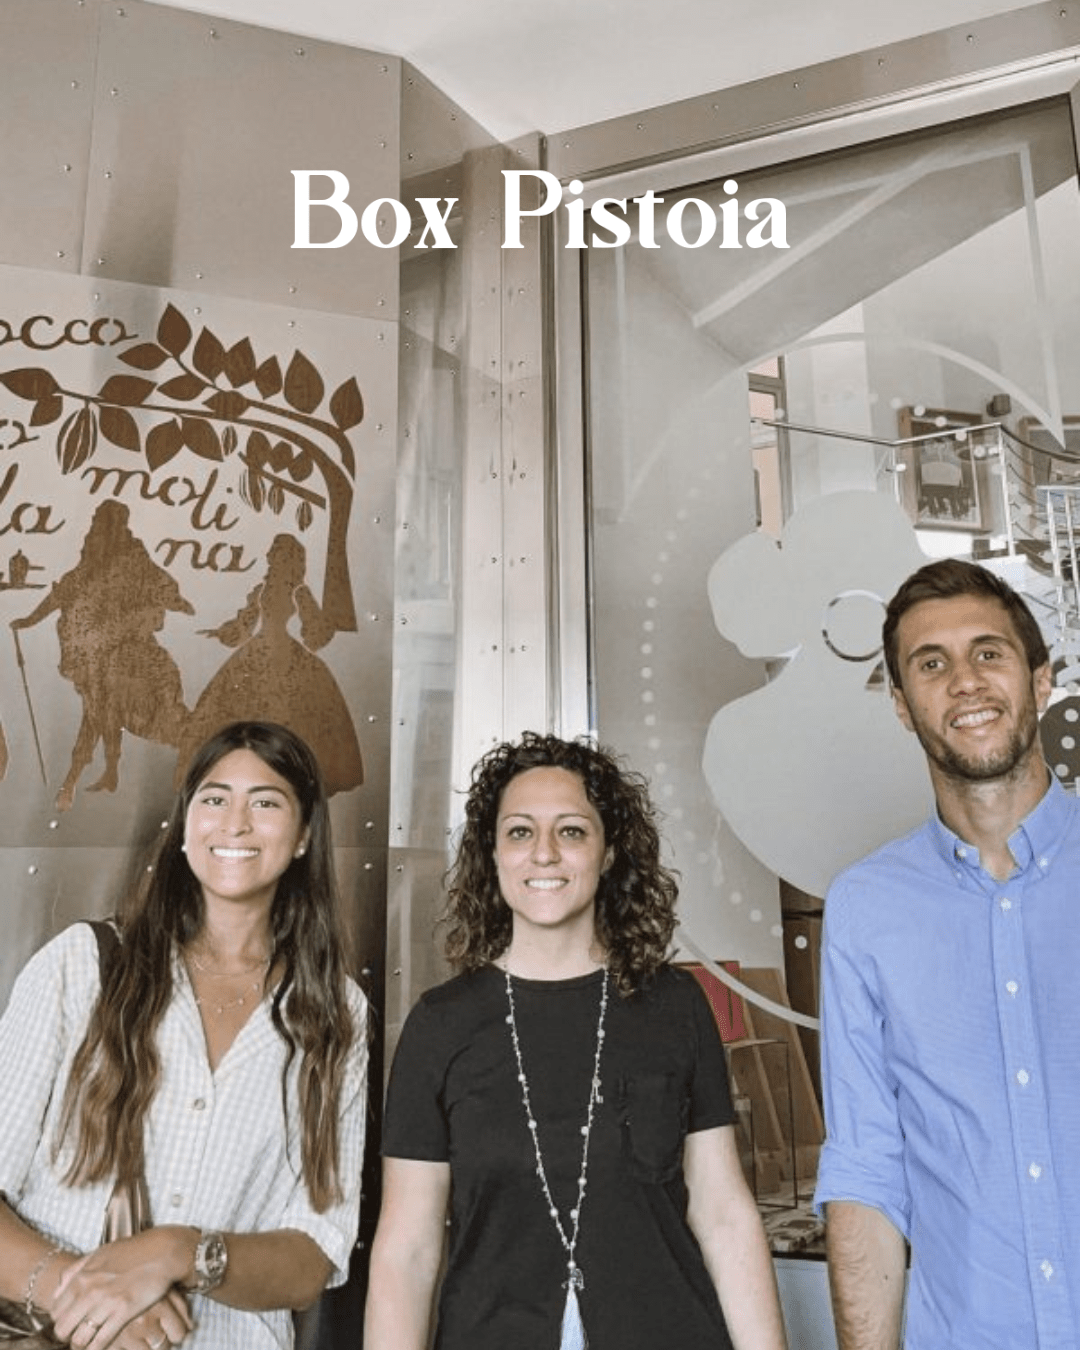 Pistoia Box